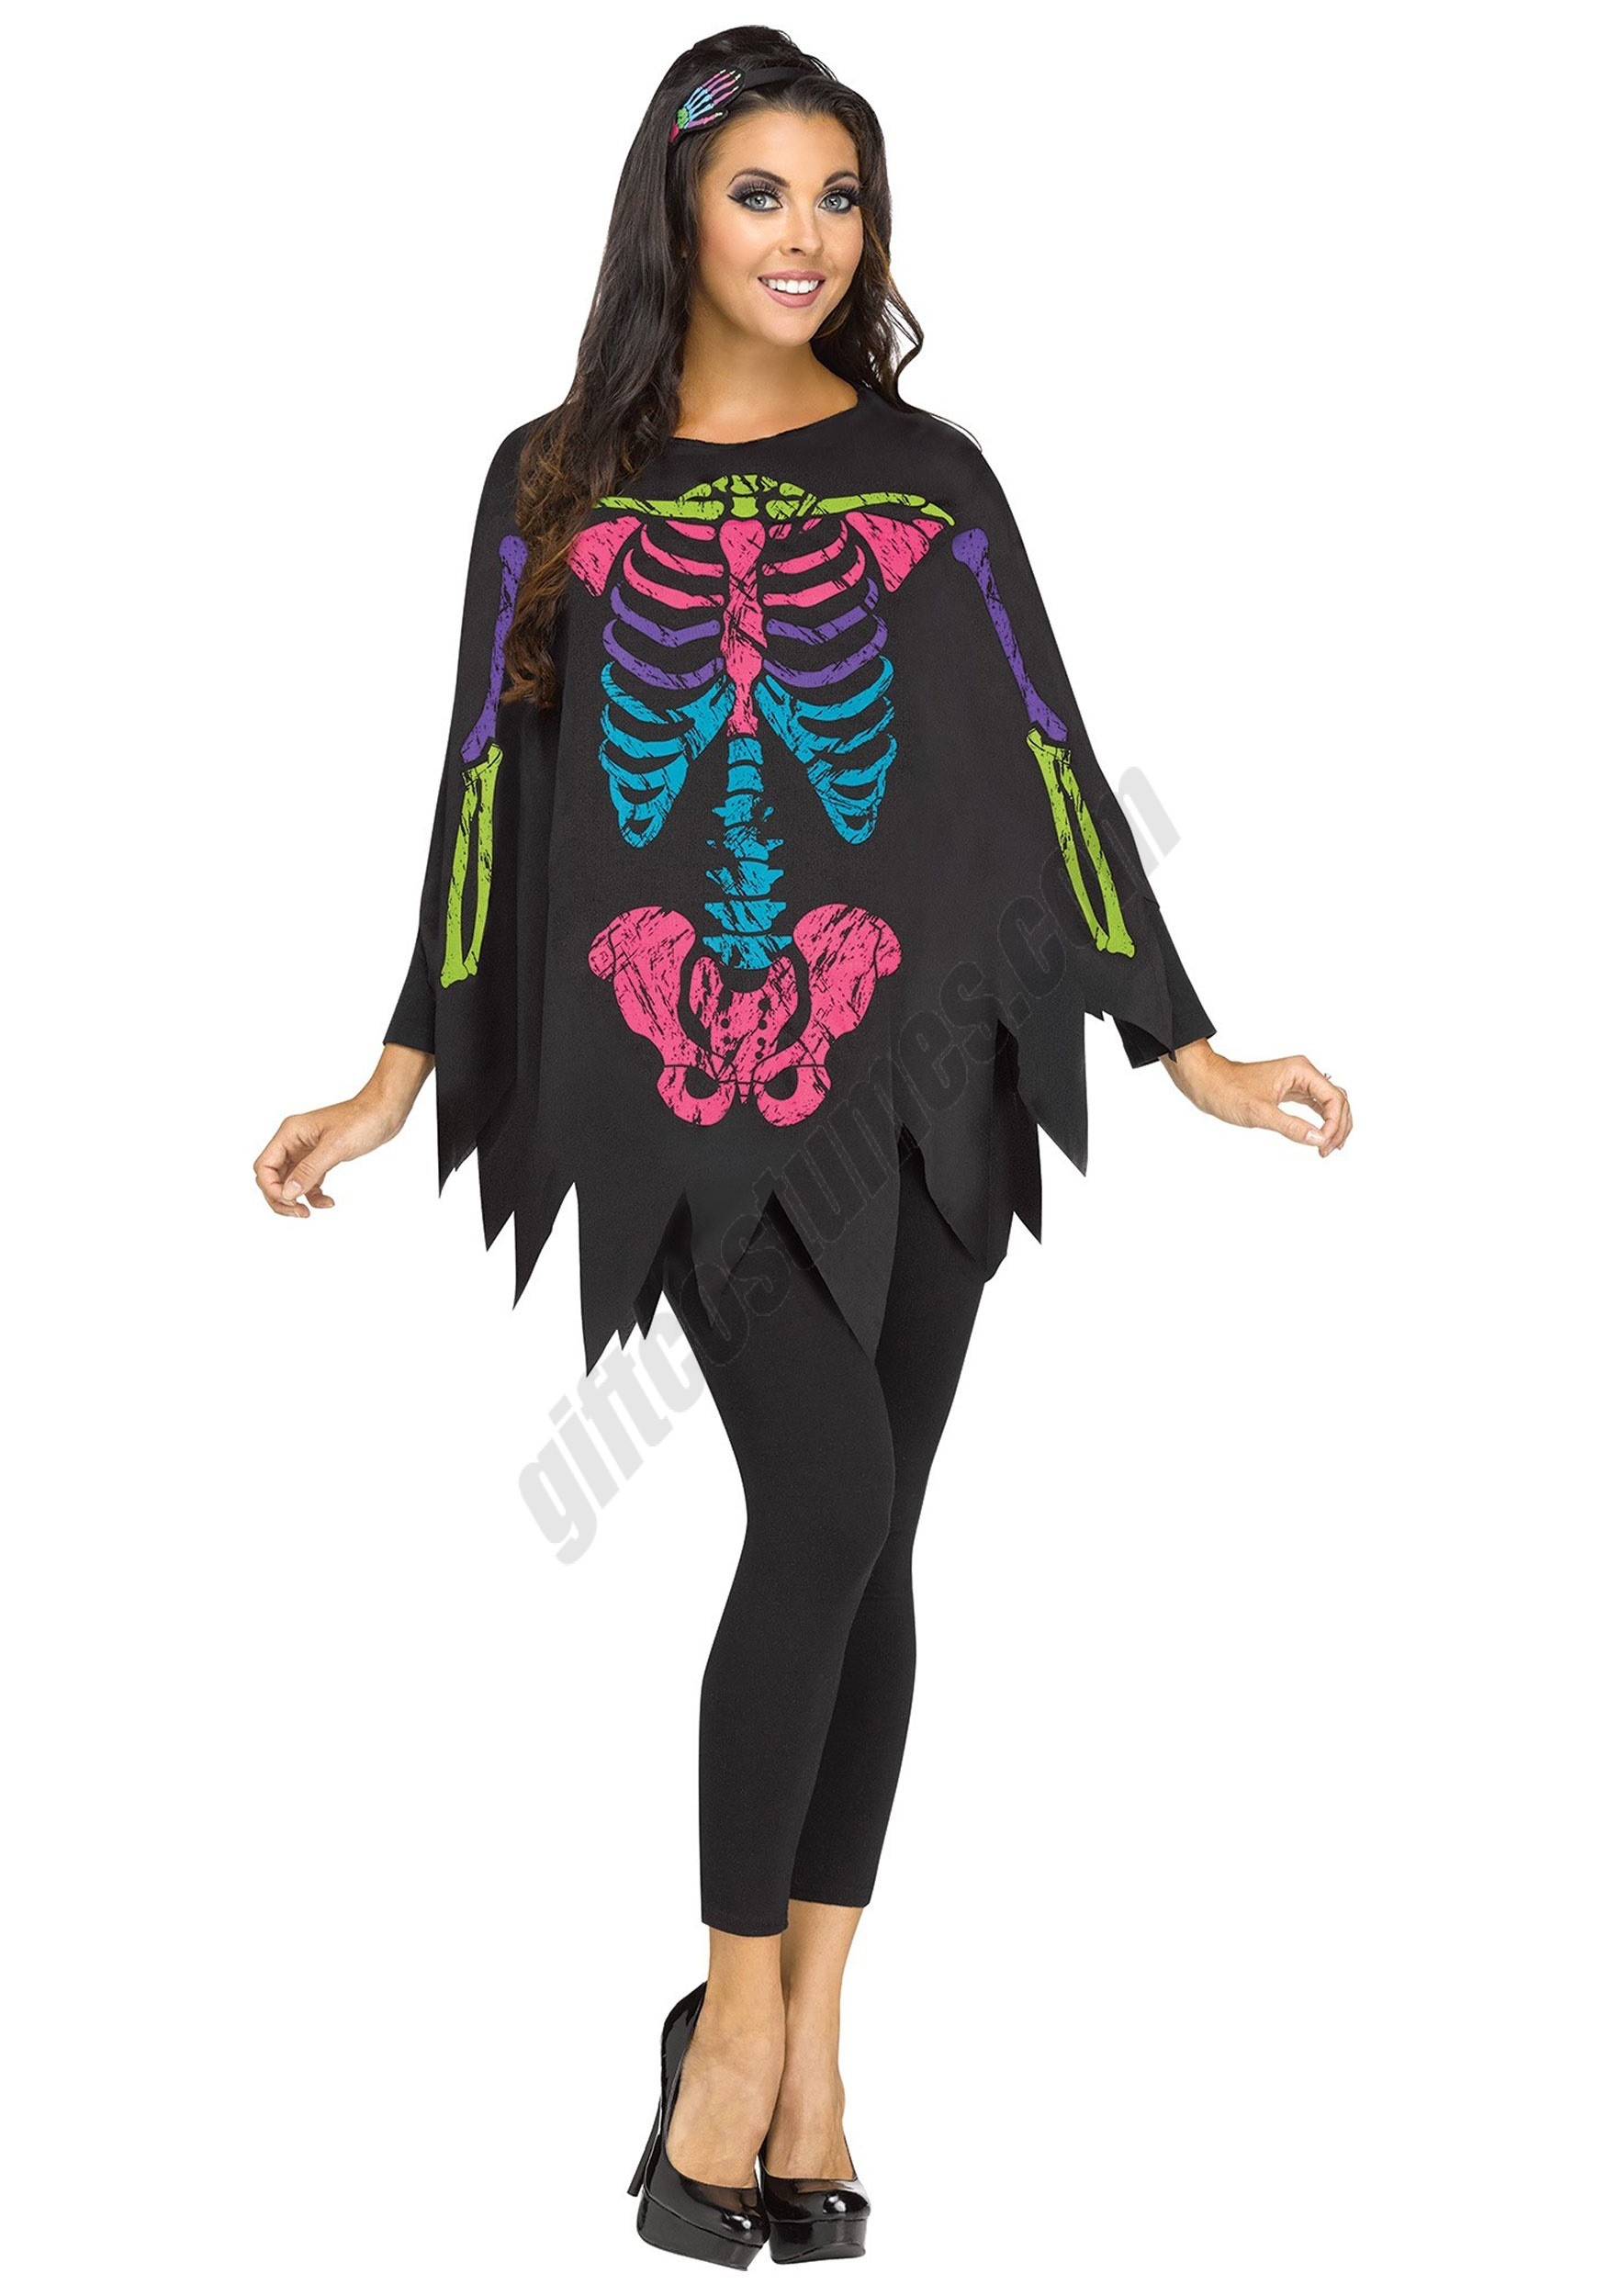 Color Bones Adult Poncho Costume - Women's - Color Bones Adult Poncho Costume - Women's